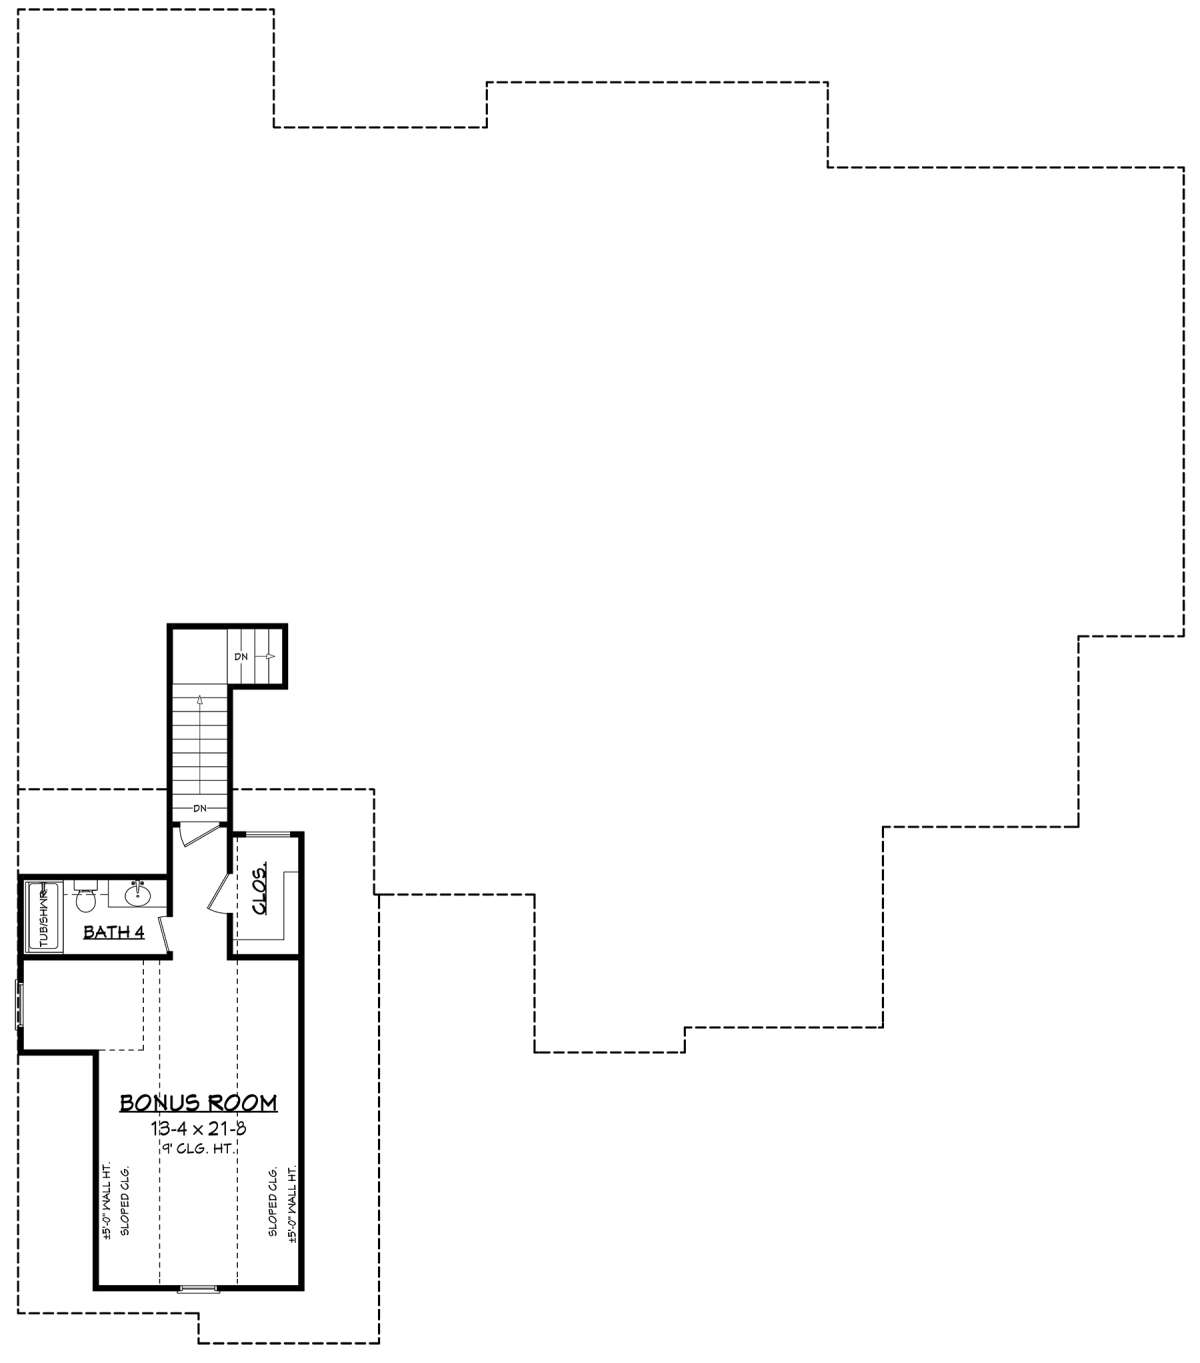 Bonus Room for House Plan #041-00183